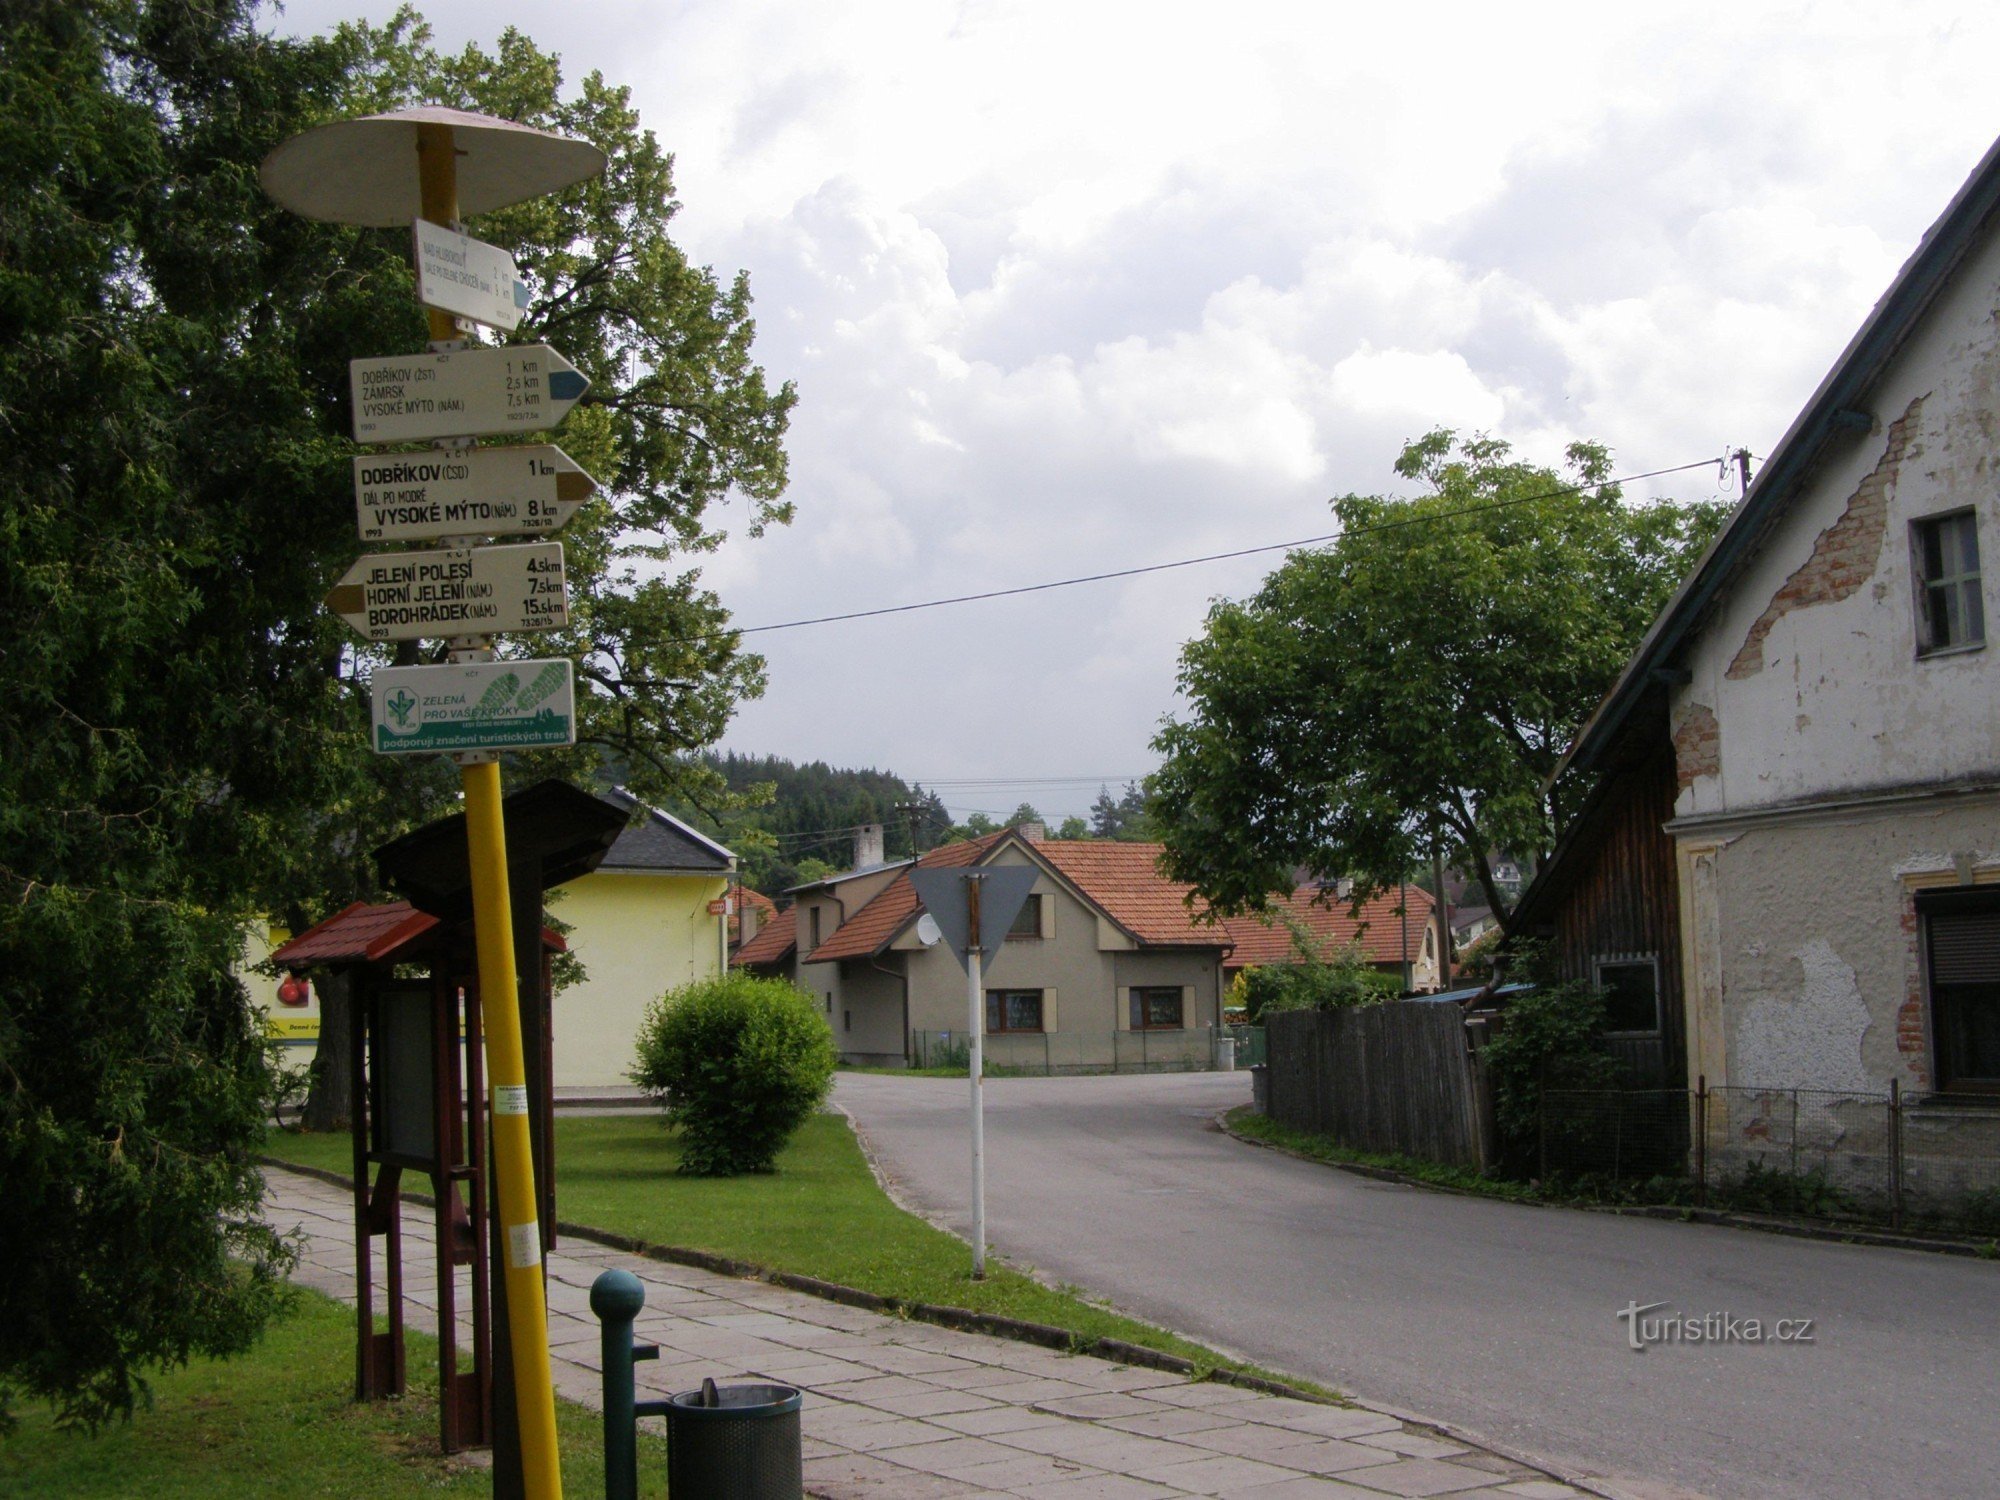 τουριστικό σταυροδρόμι Dobříkov - χωριό